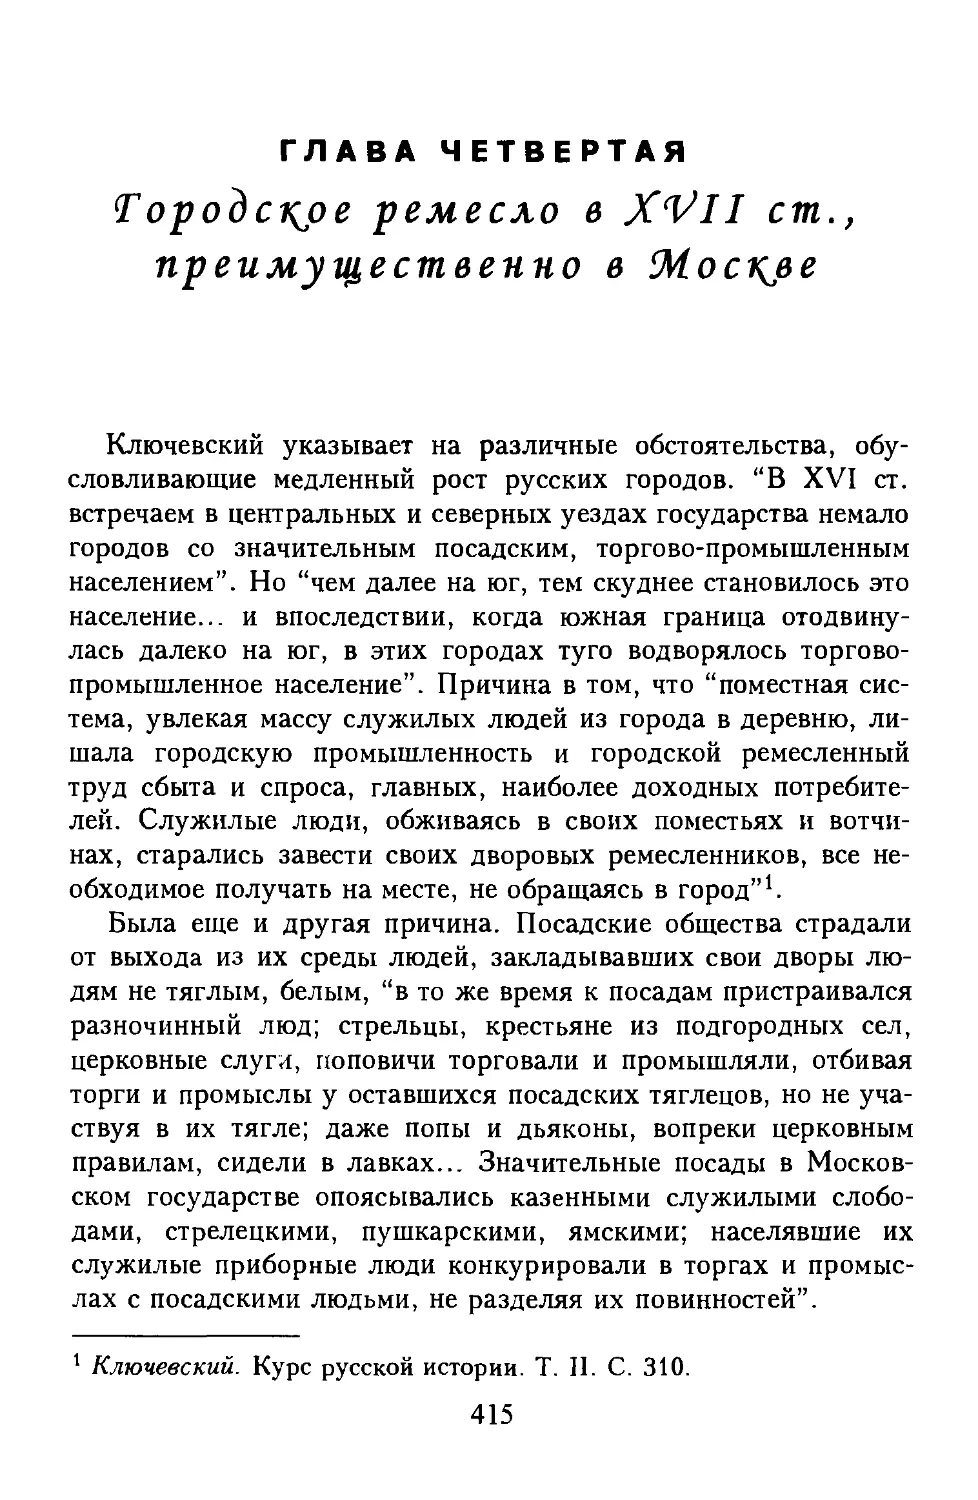 Глава 4. Городское ремесло в XVII ст., преимущественно в Москве